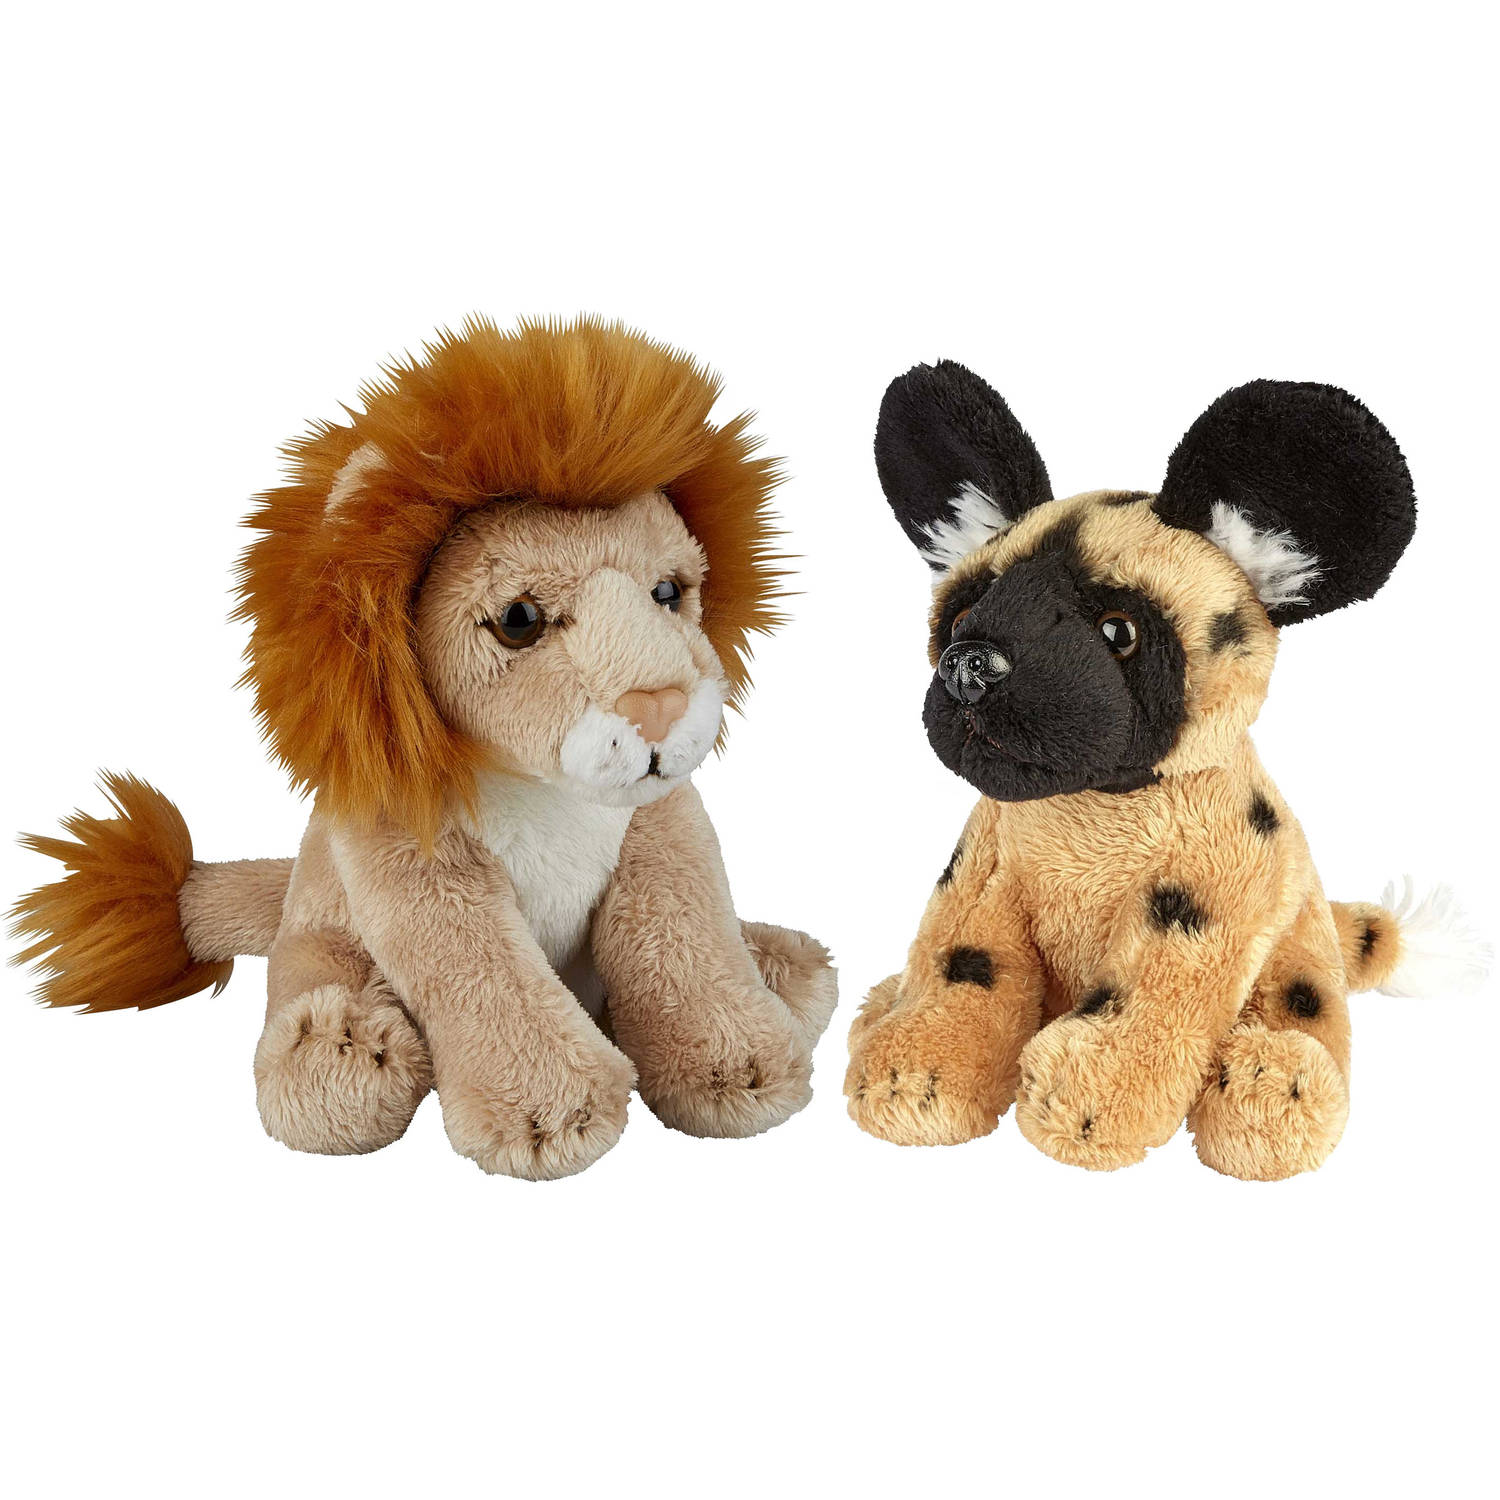 Safari Dieren Serie Pluche Knuffels 2x Stuks Wilde Hond En Leeuw Van 15 Cm Knuffeldier